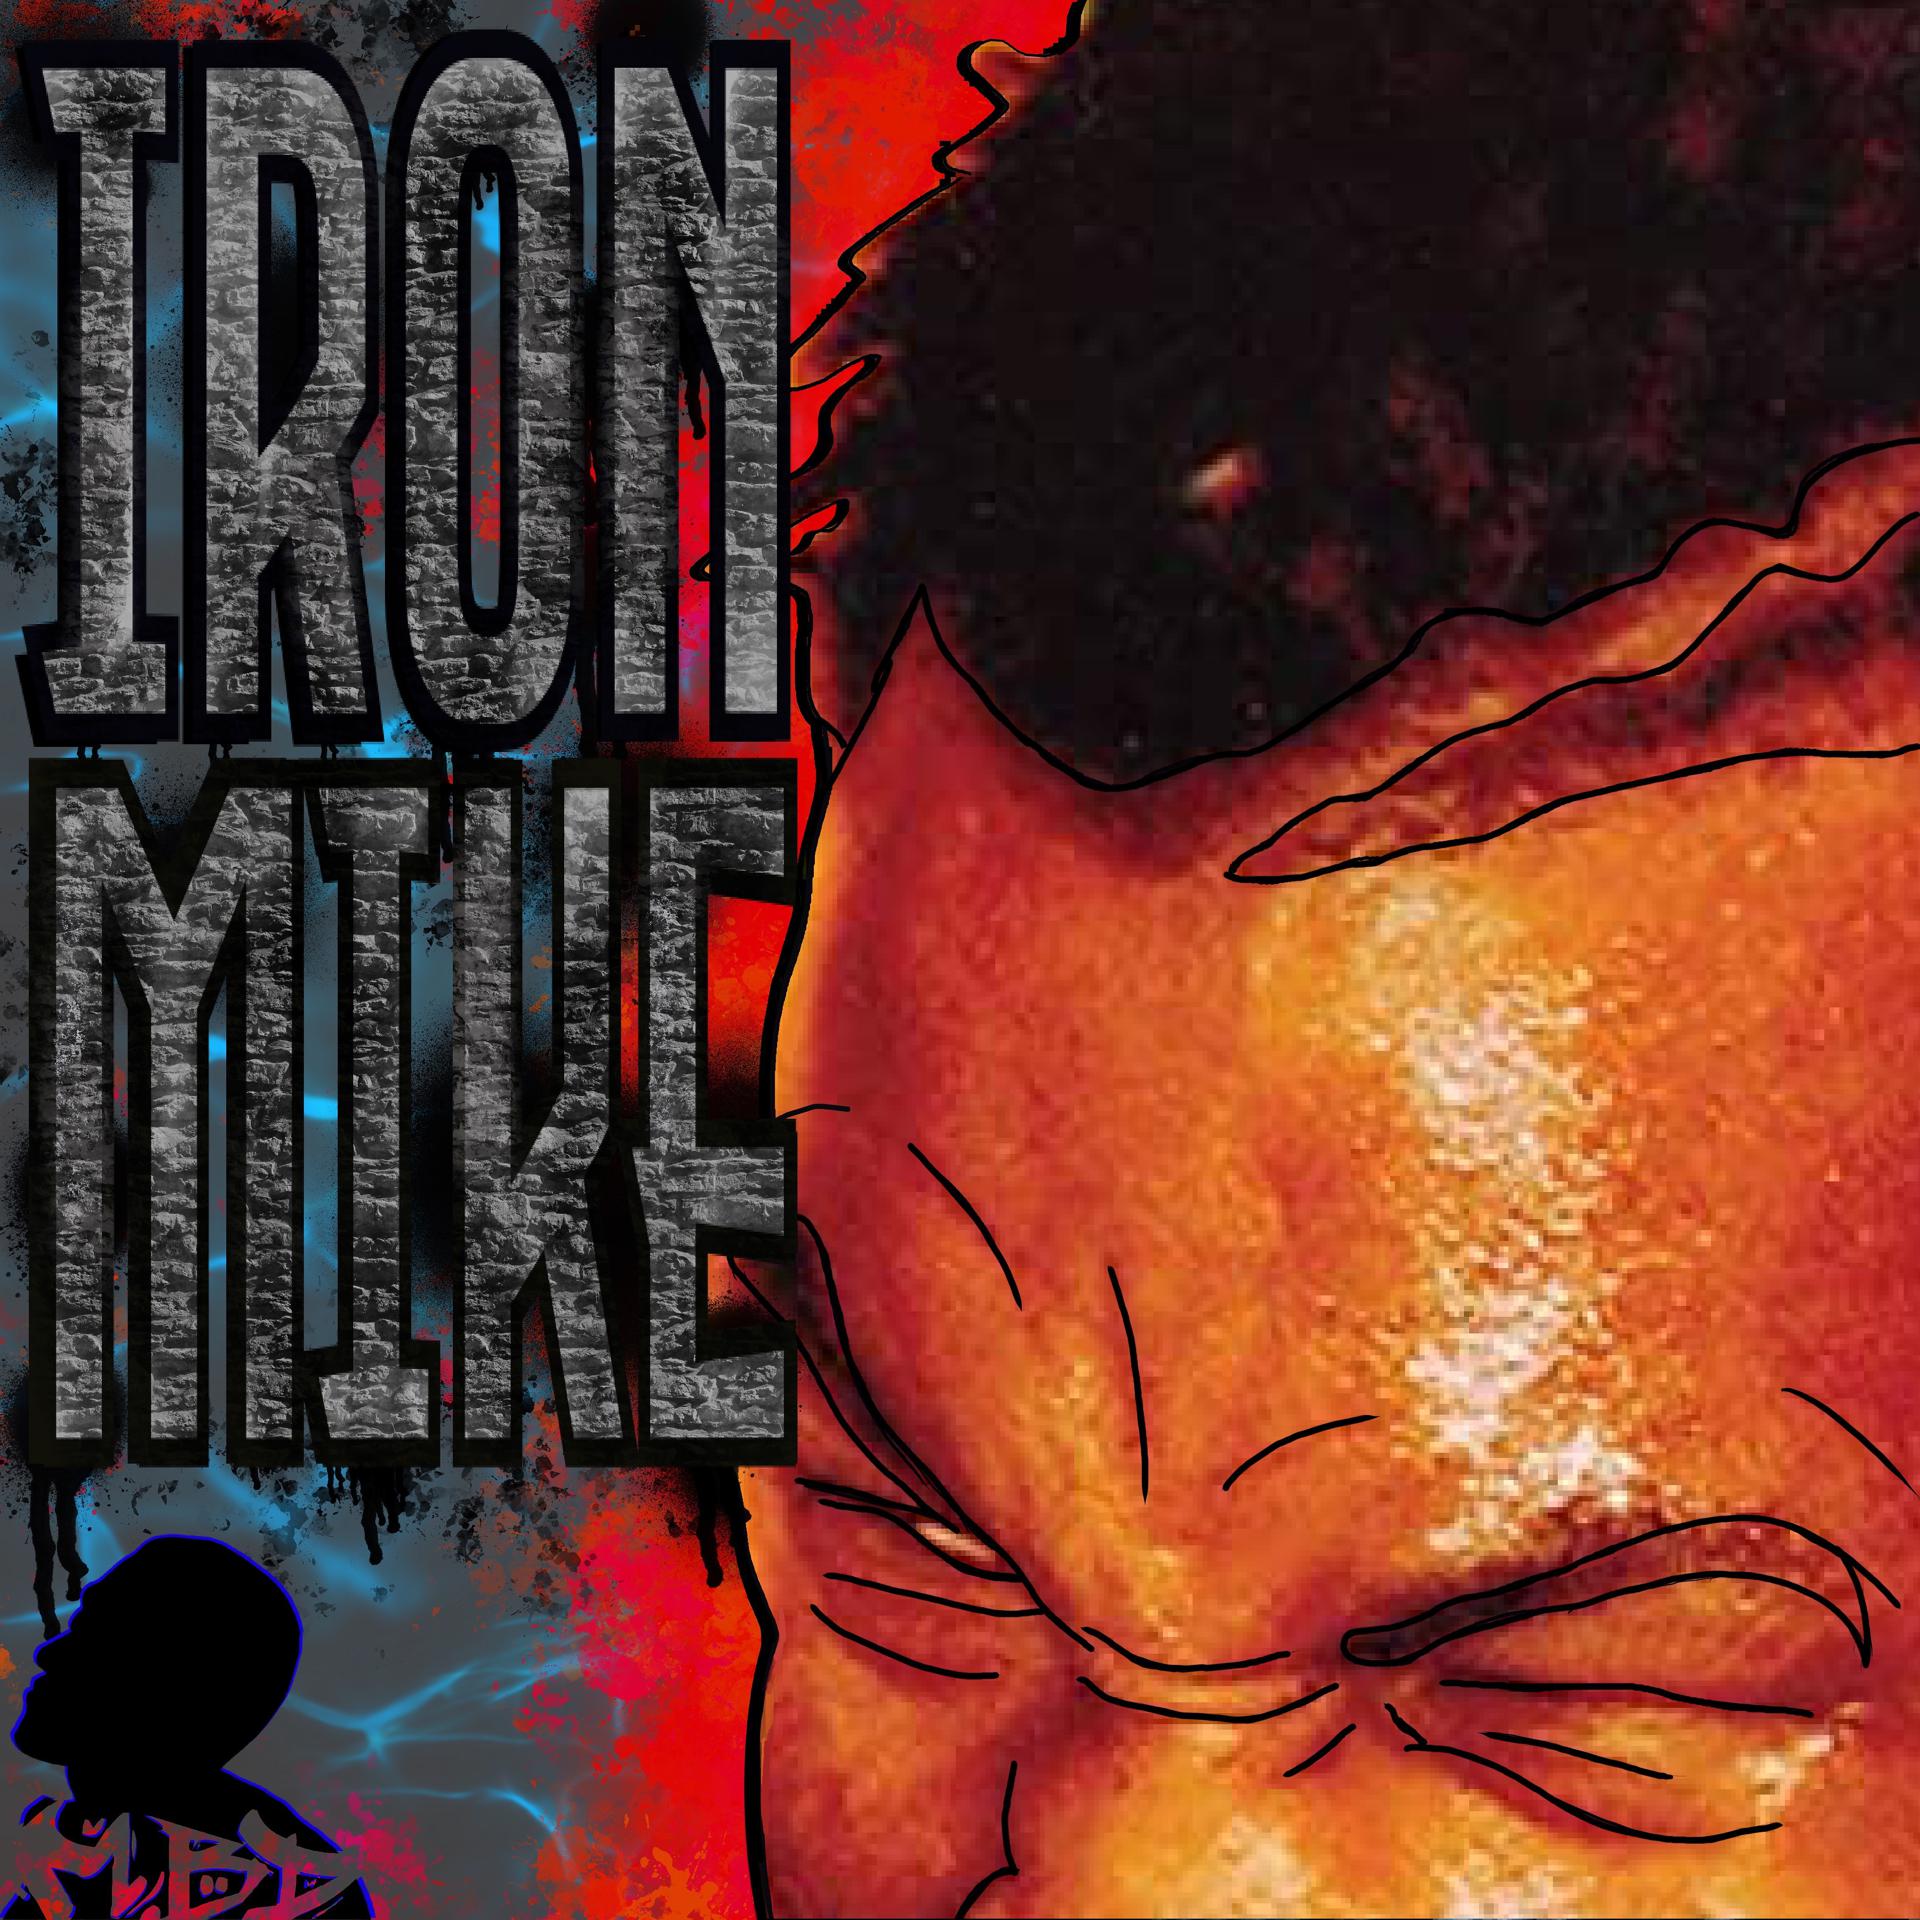 Постер альбома Iron Mike